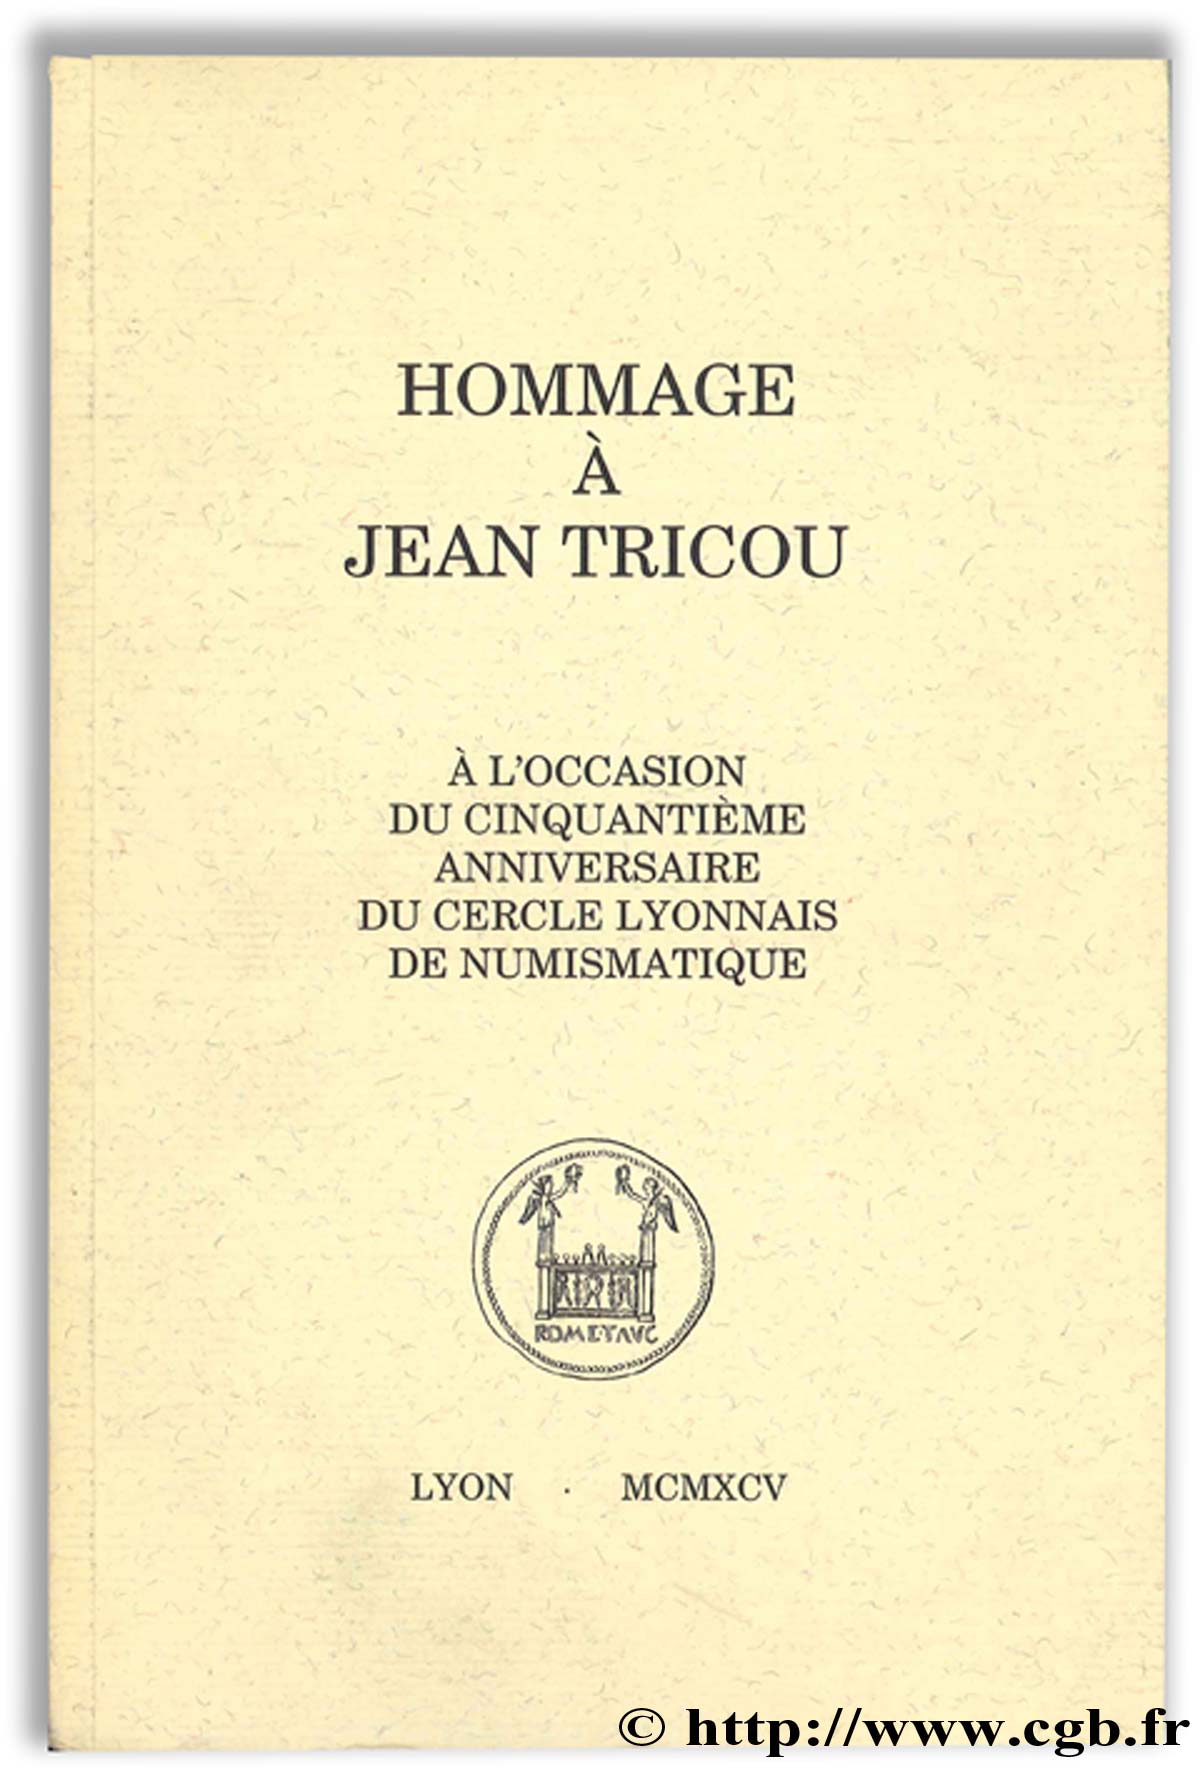 Hommage à Jean Tricou, à l occasion du cinquantième anniversaire du cercle lyonnais de numismatique Collectif